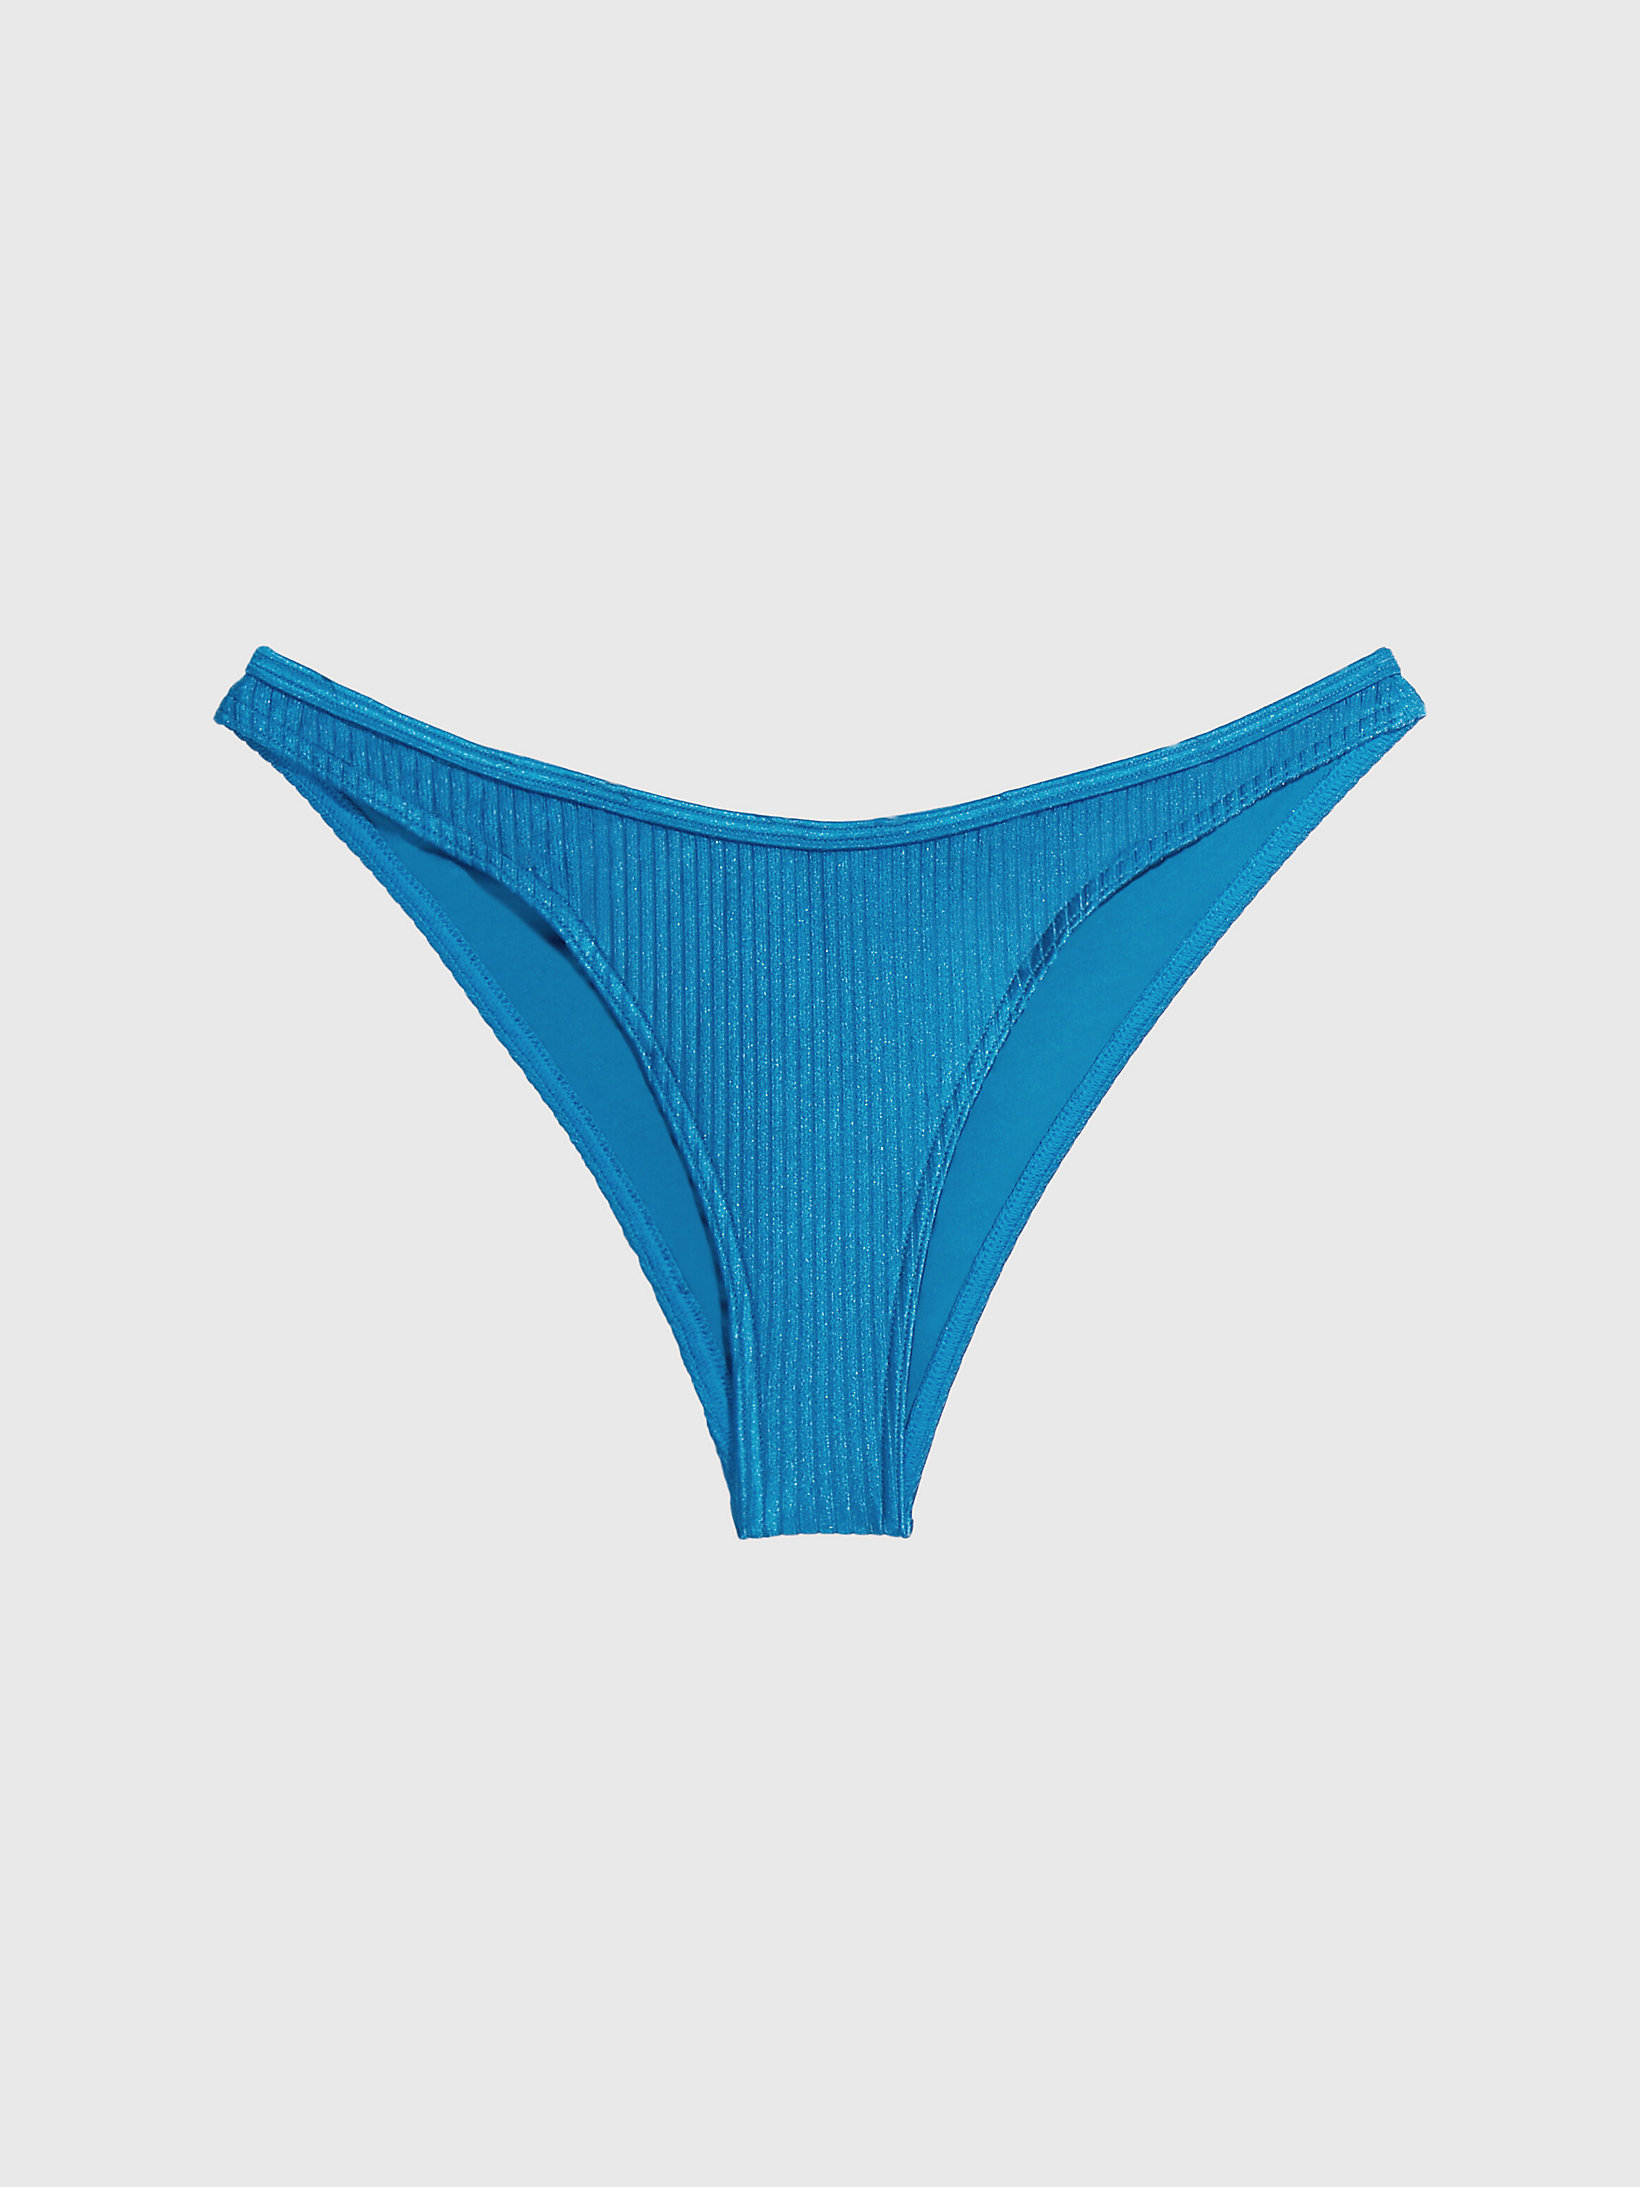 Regatta Blue Bikinihose Mit Hohem Beinausschnitt - CK One undefined Damen Calvin Klein